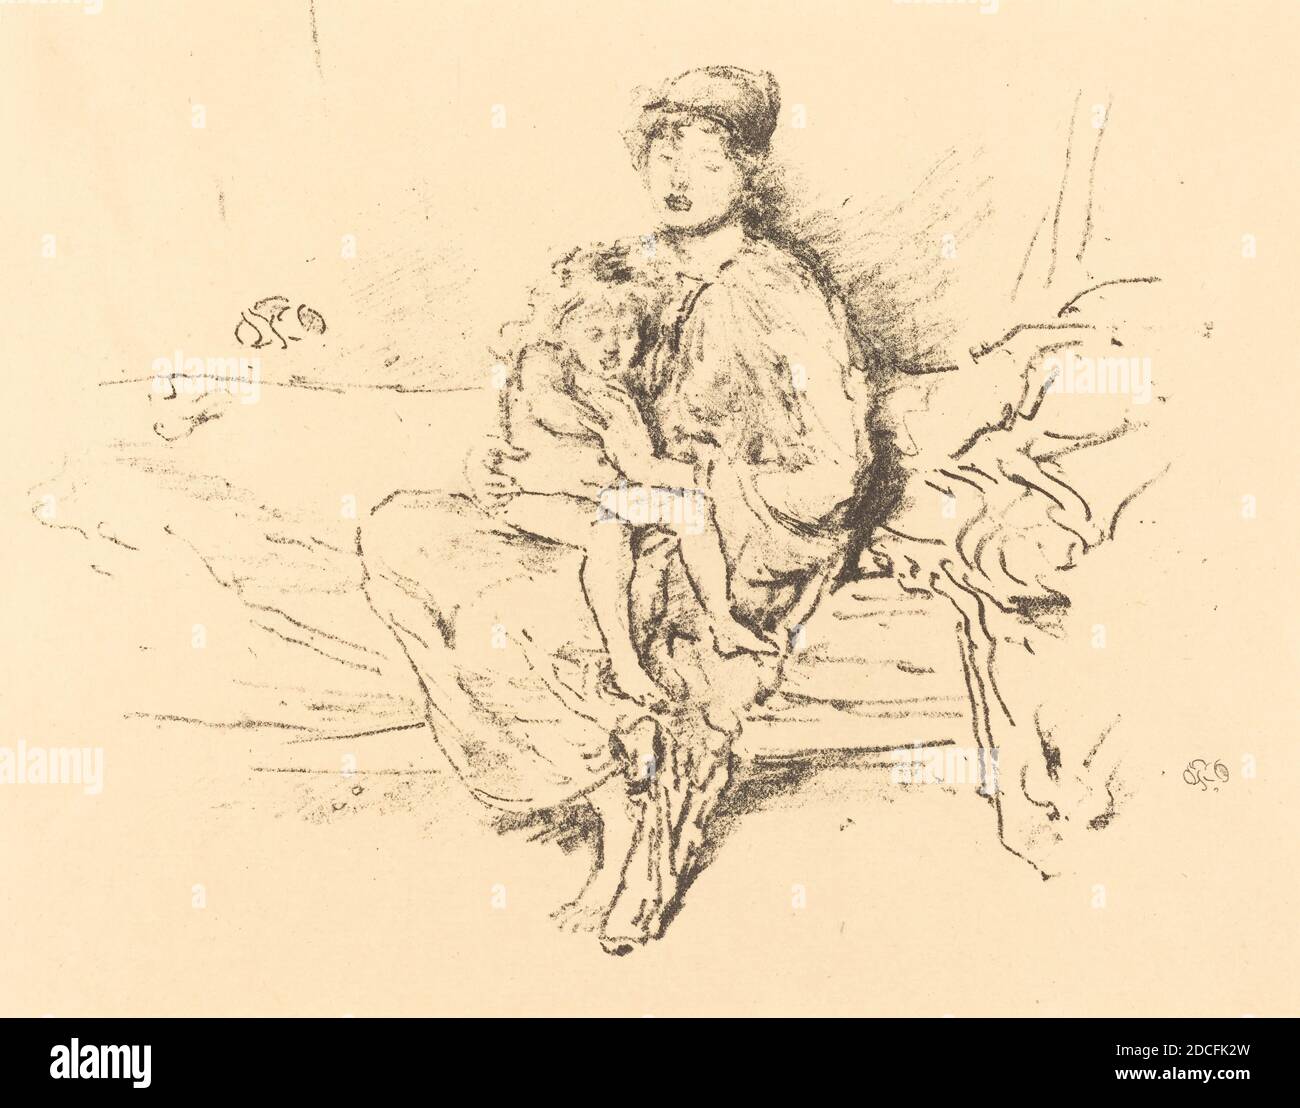 James McNeill Whistler, (artiste), cuisine américaine, 1834 - 1903, mère et enfant, n° 2, 1891/1895, lithographie en noir sur papier à poser, image : 17 × 20.4 cm (6 11/16 × 8 1/16 po), feuille : 22.7 × 28.2 cm (8 15/16 × 11 1/8 po Banque D'Images